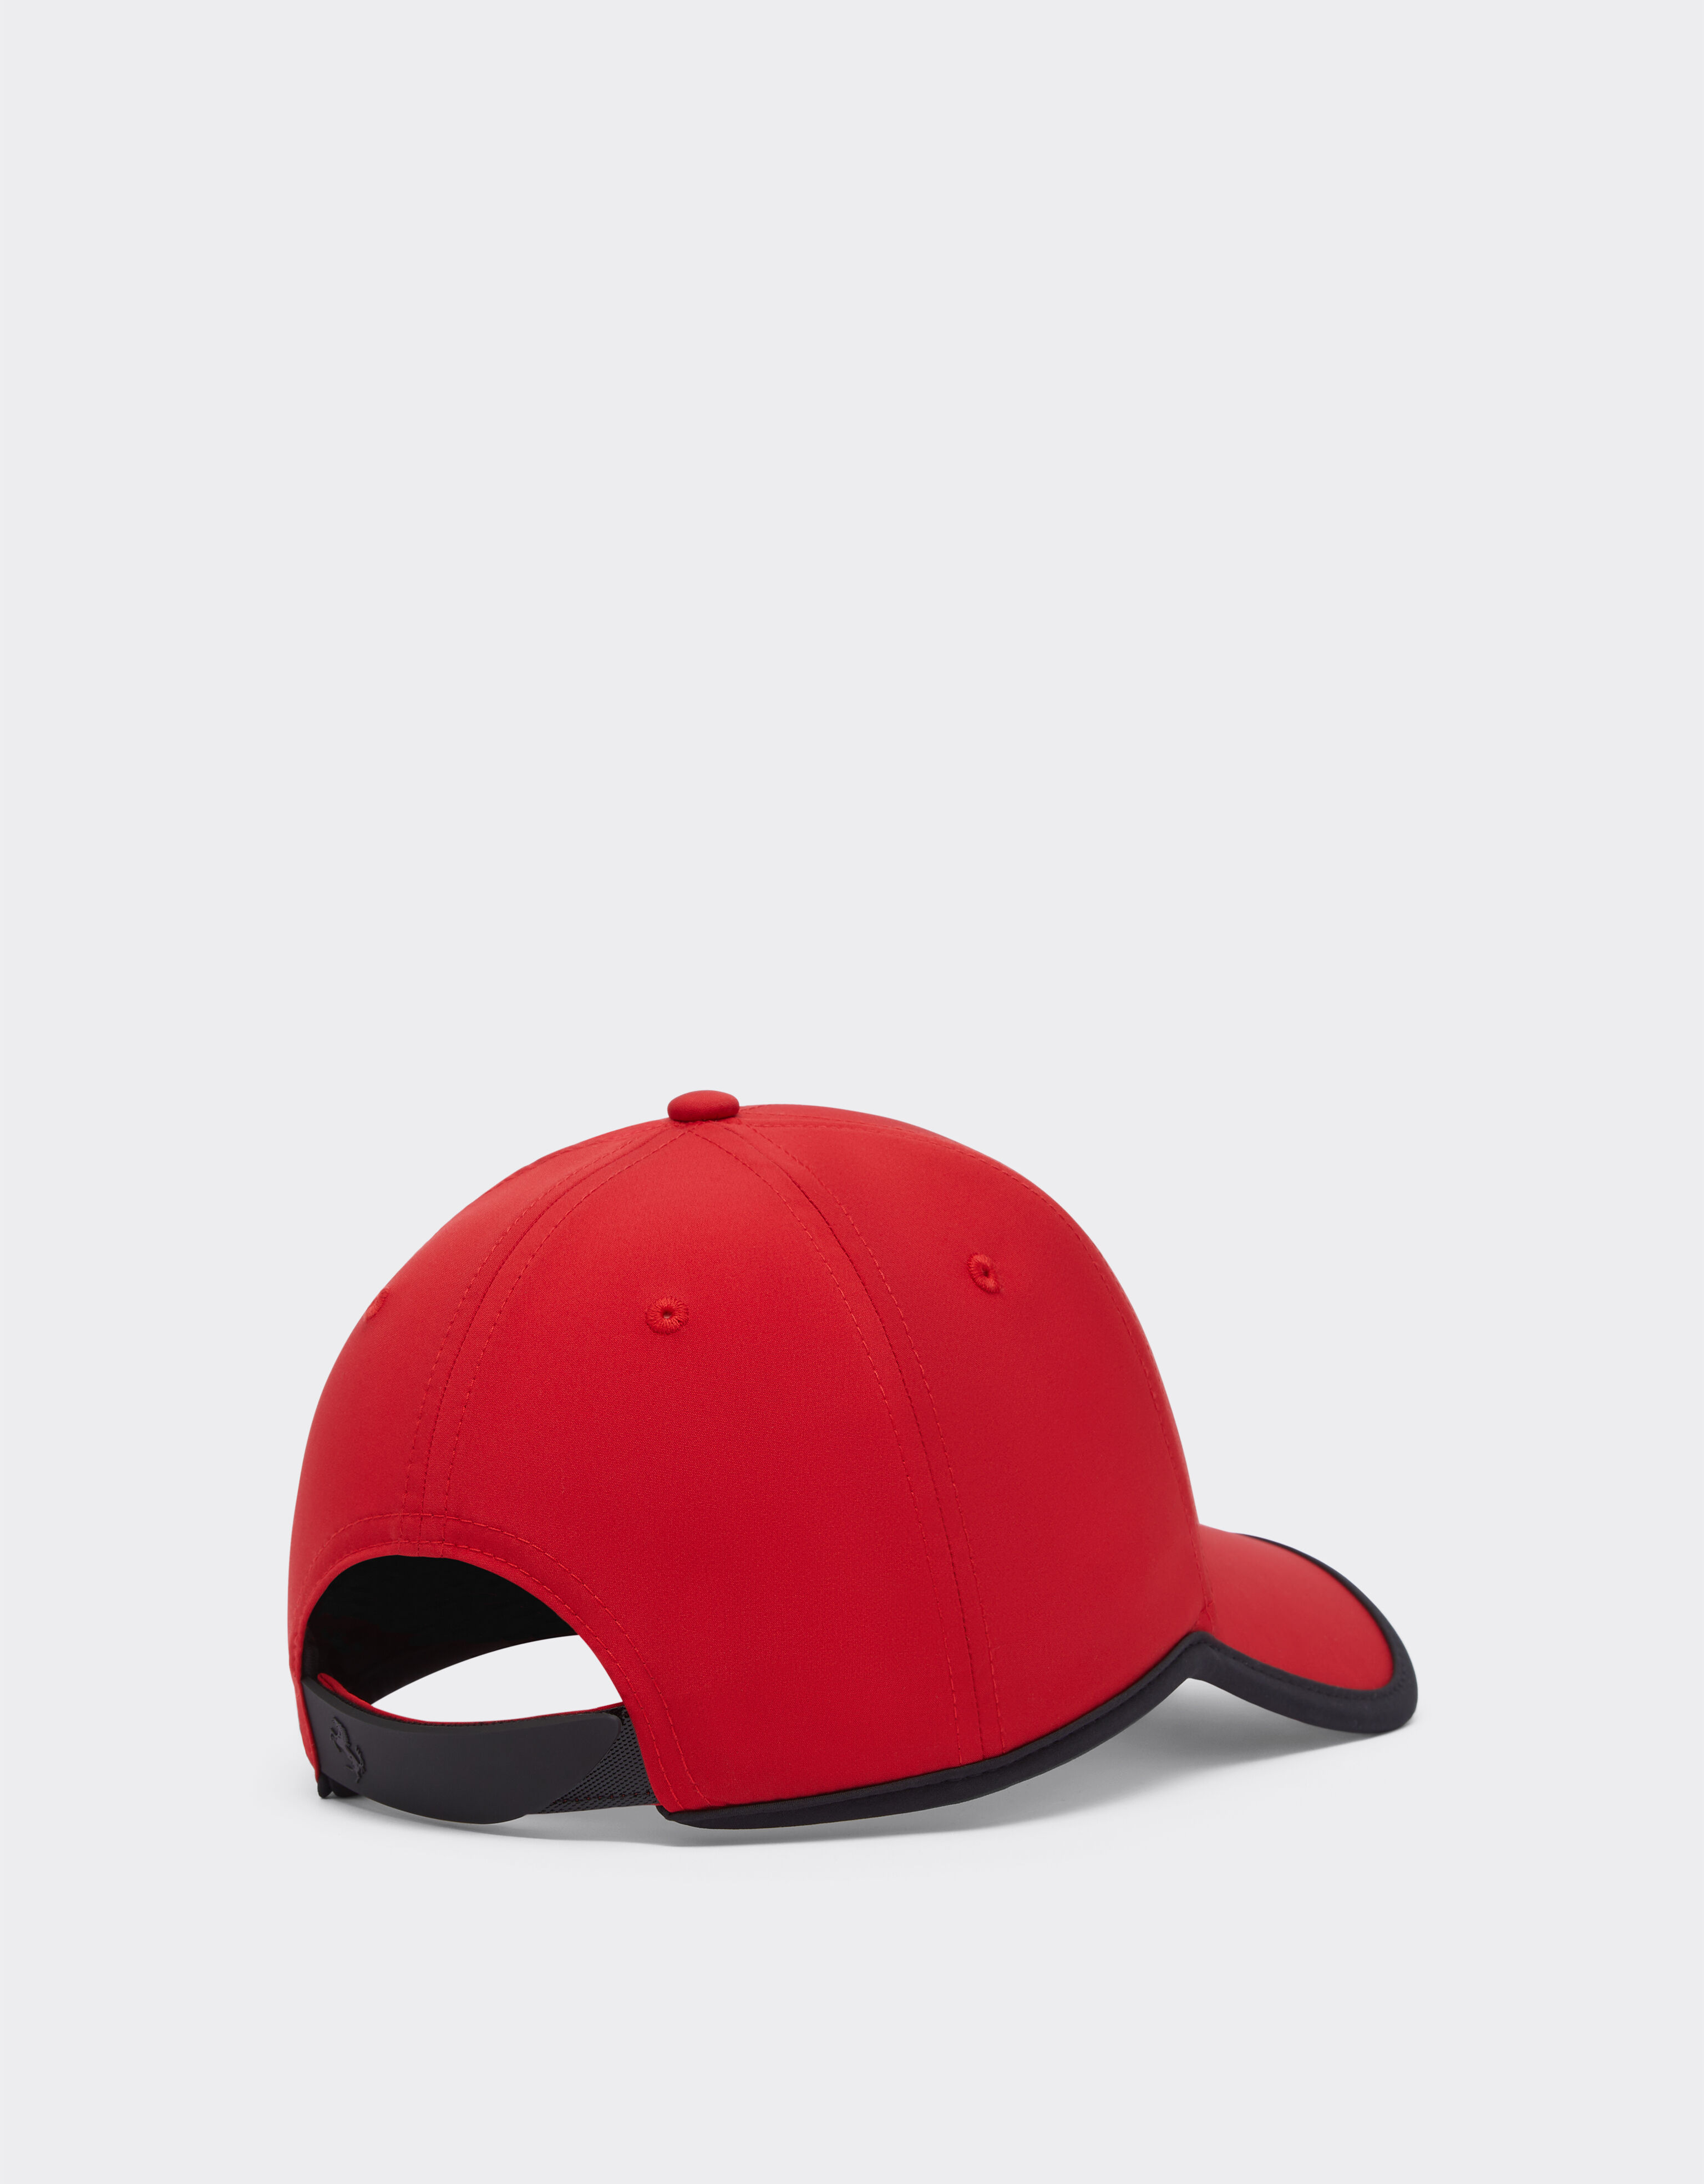 Ferrari 青少年跃马细节棒球帽 Rosso Corsa 红色 20274fK